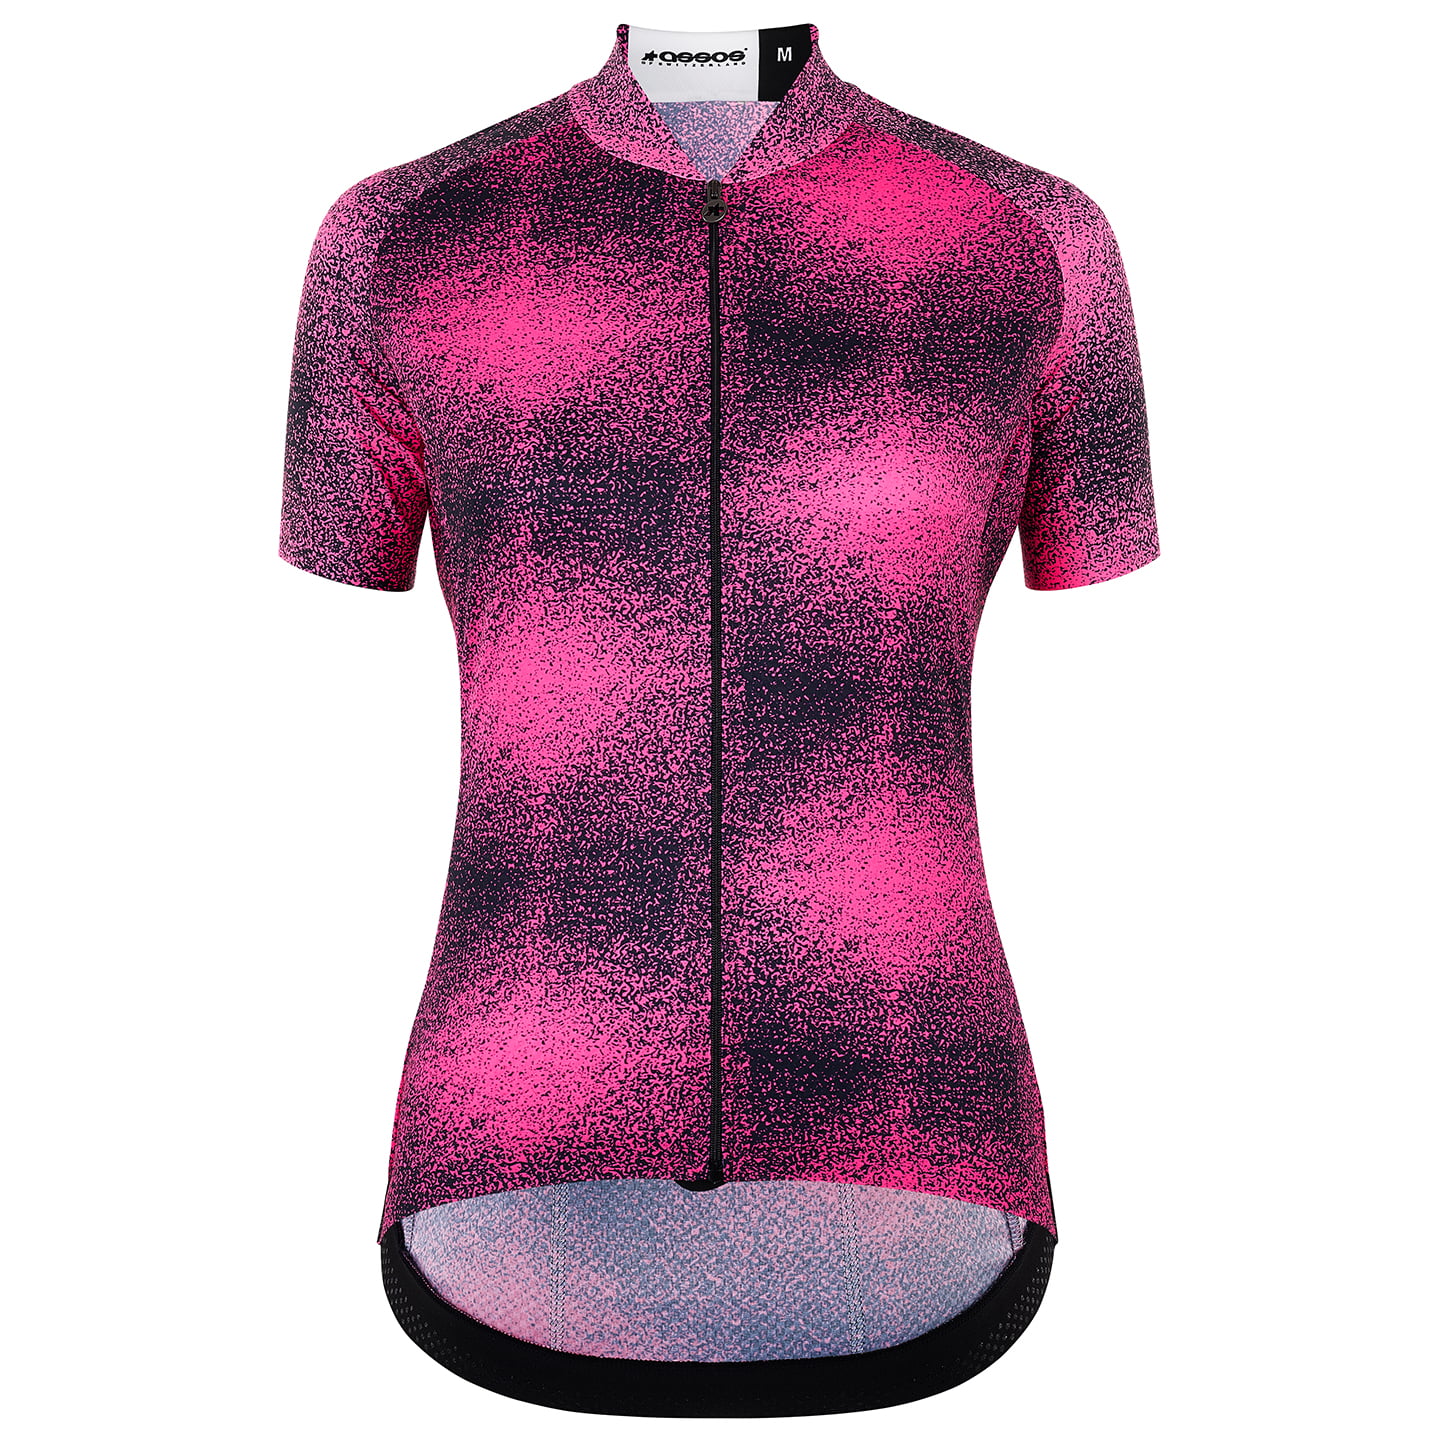 ASSOS Uma GT C2 EVO Zeus Women’s Jersey Women’s Short Sleeve Jersey, size XL, Cycle jersey, Bike gear